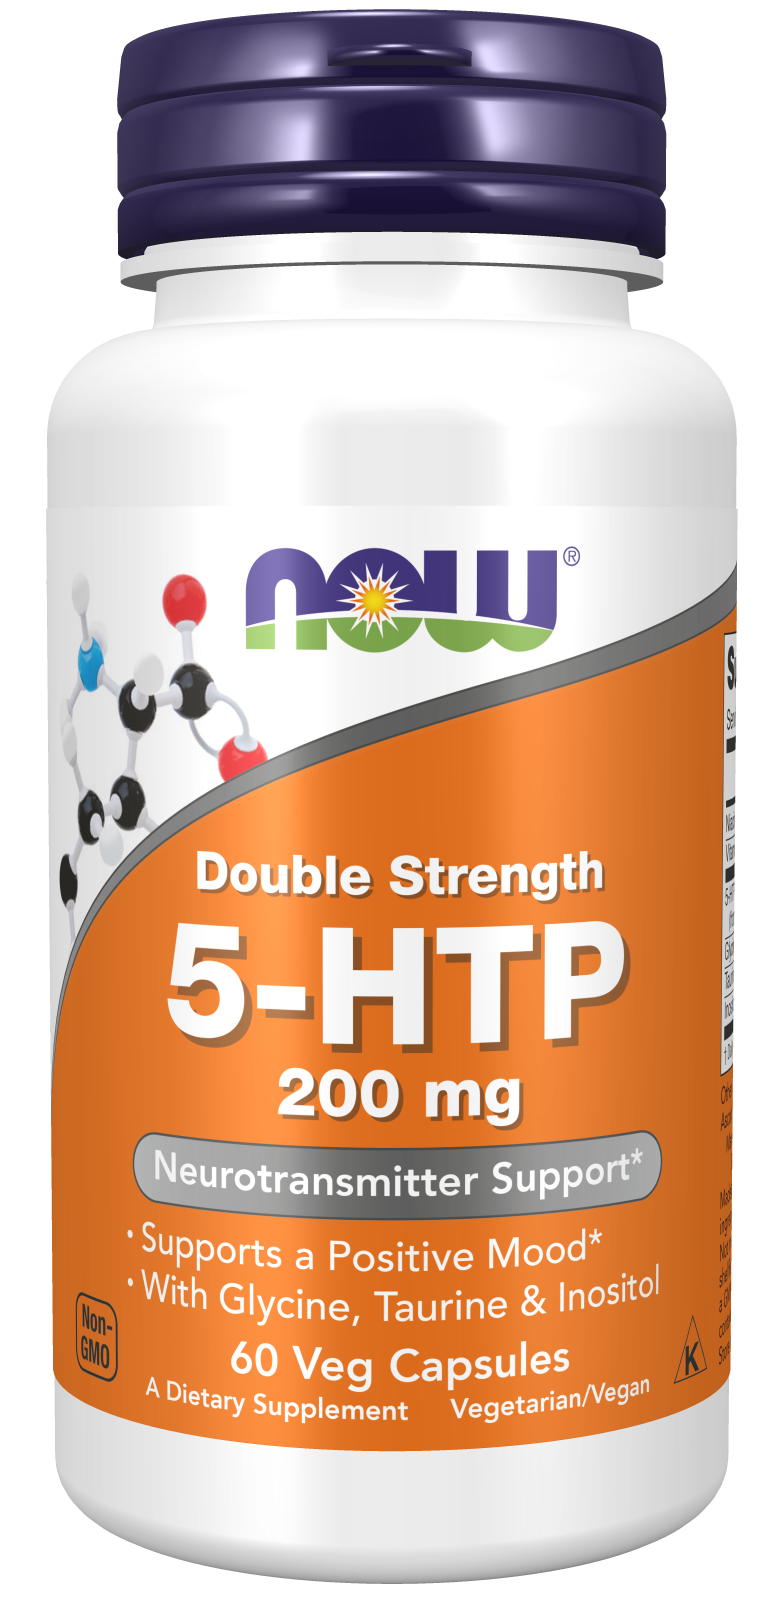 5-HTP, Double Strength 200 mg - 60 Veg Capsules Bottle Front